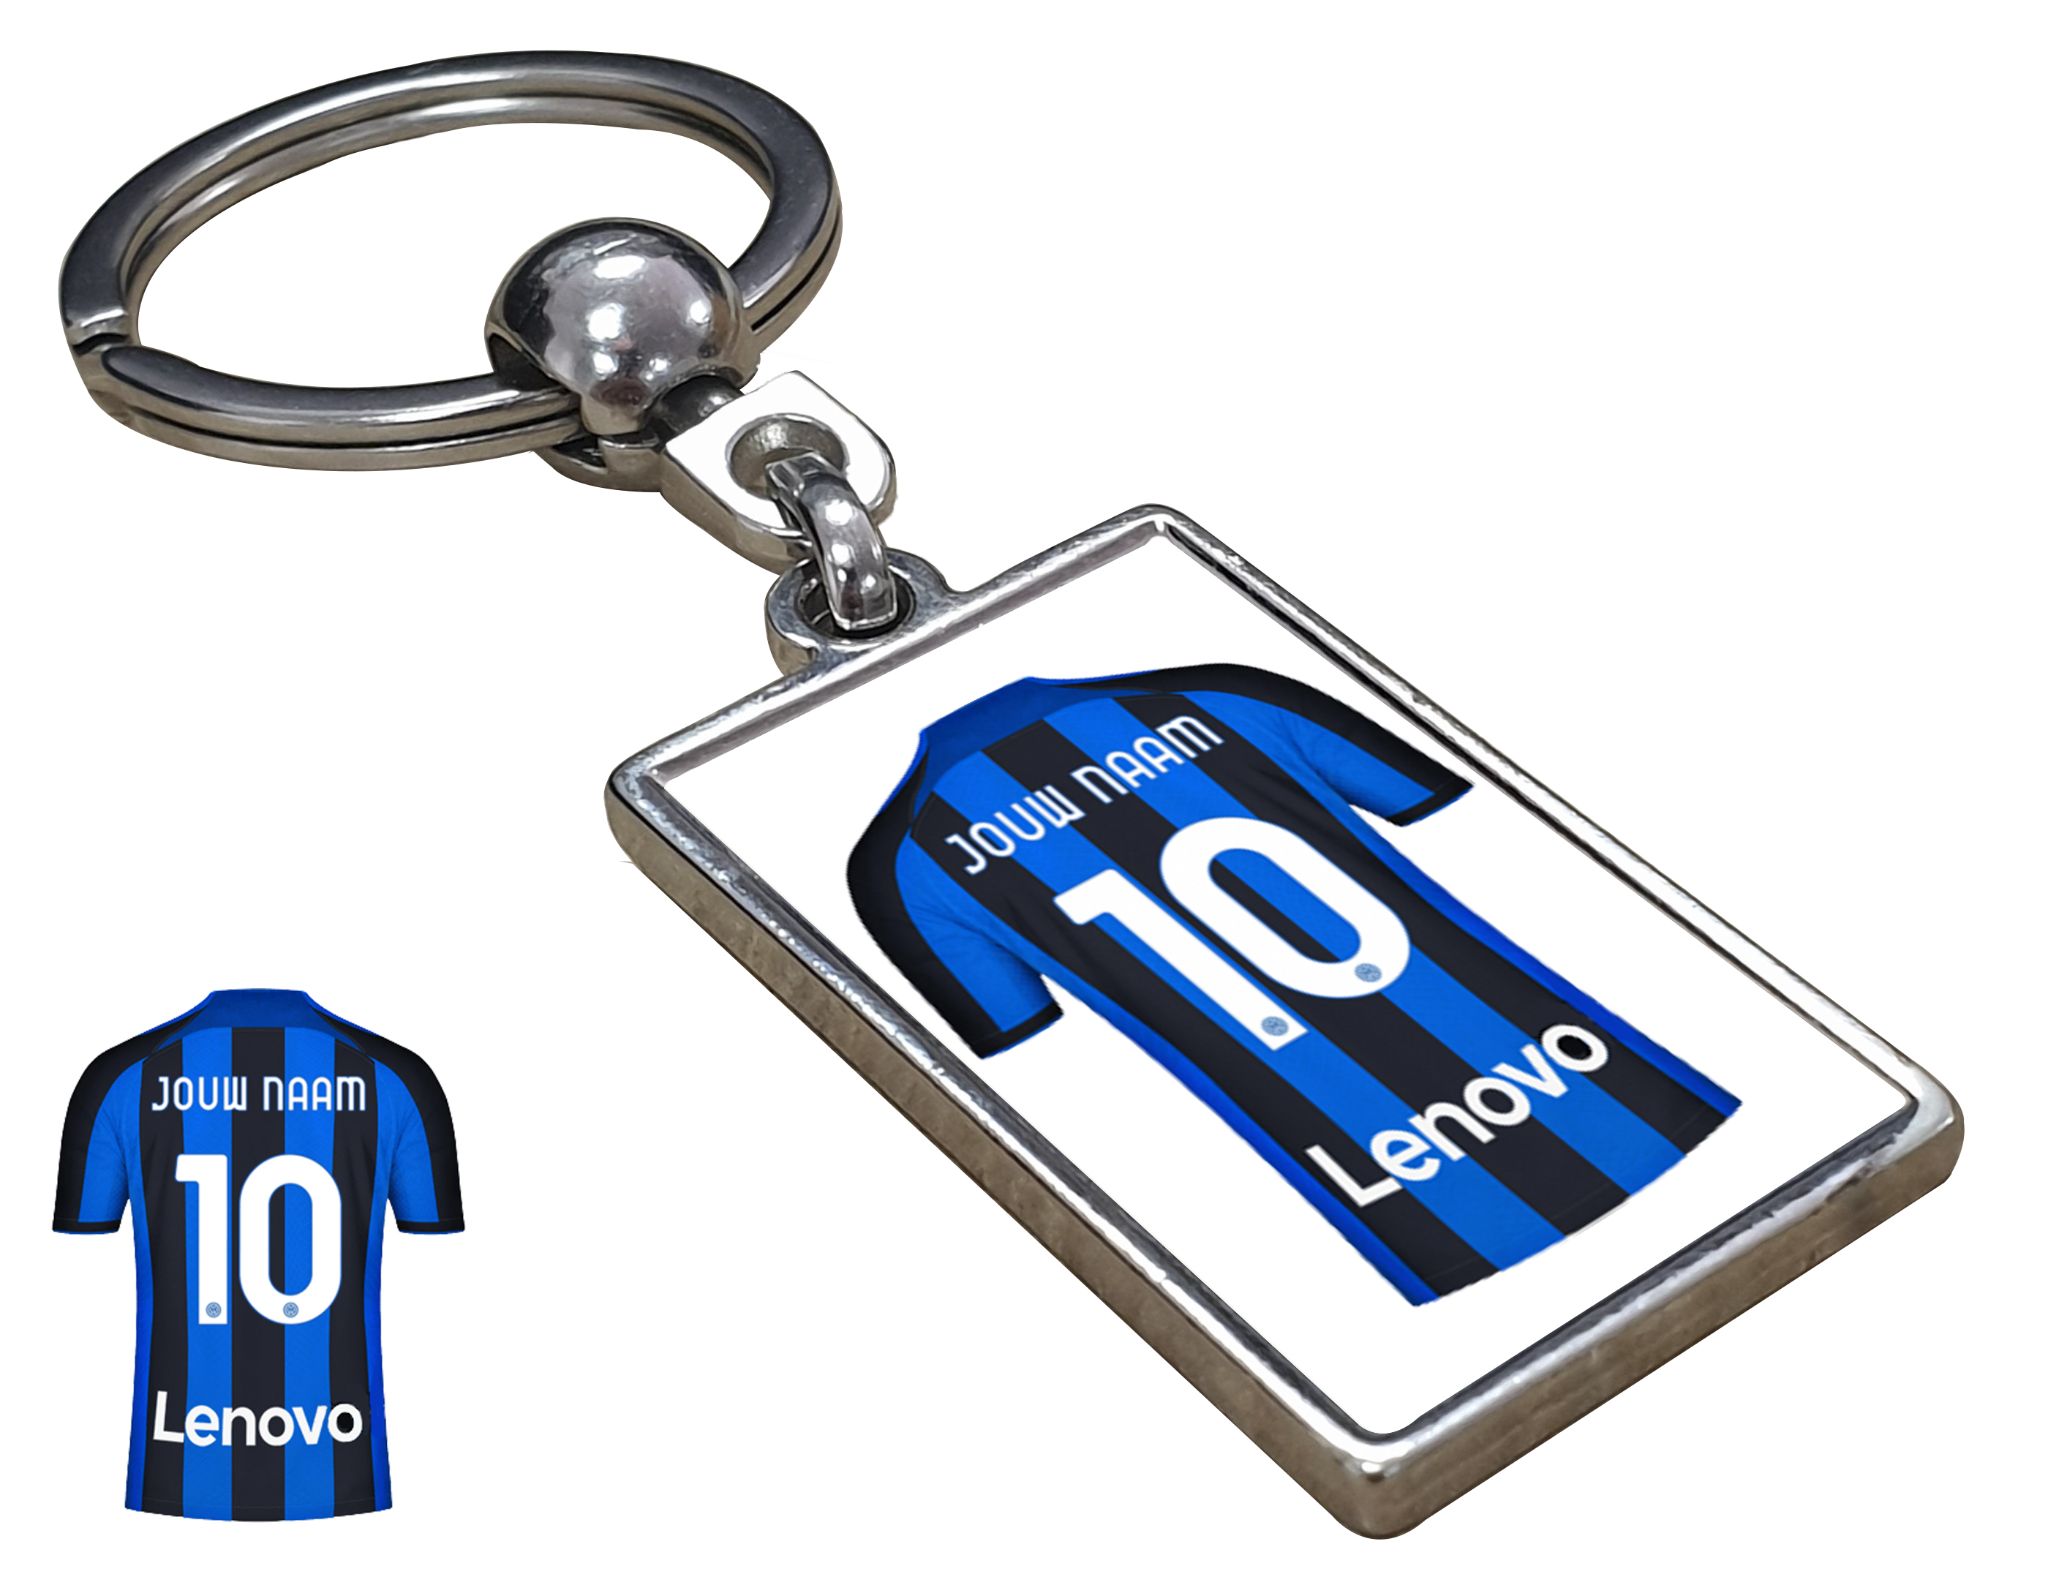 Inter Milan Shirt met Jouw Naam - Seizoen 22/23 - Gepersonaliseerde Sleutelhanger met Jouw Naam en Nummer